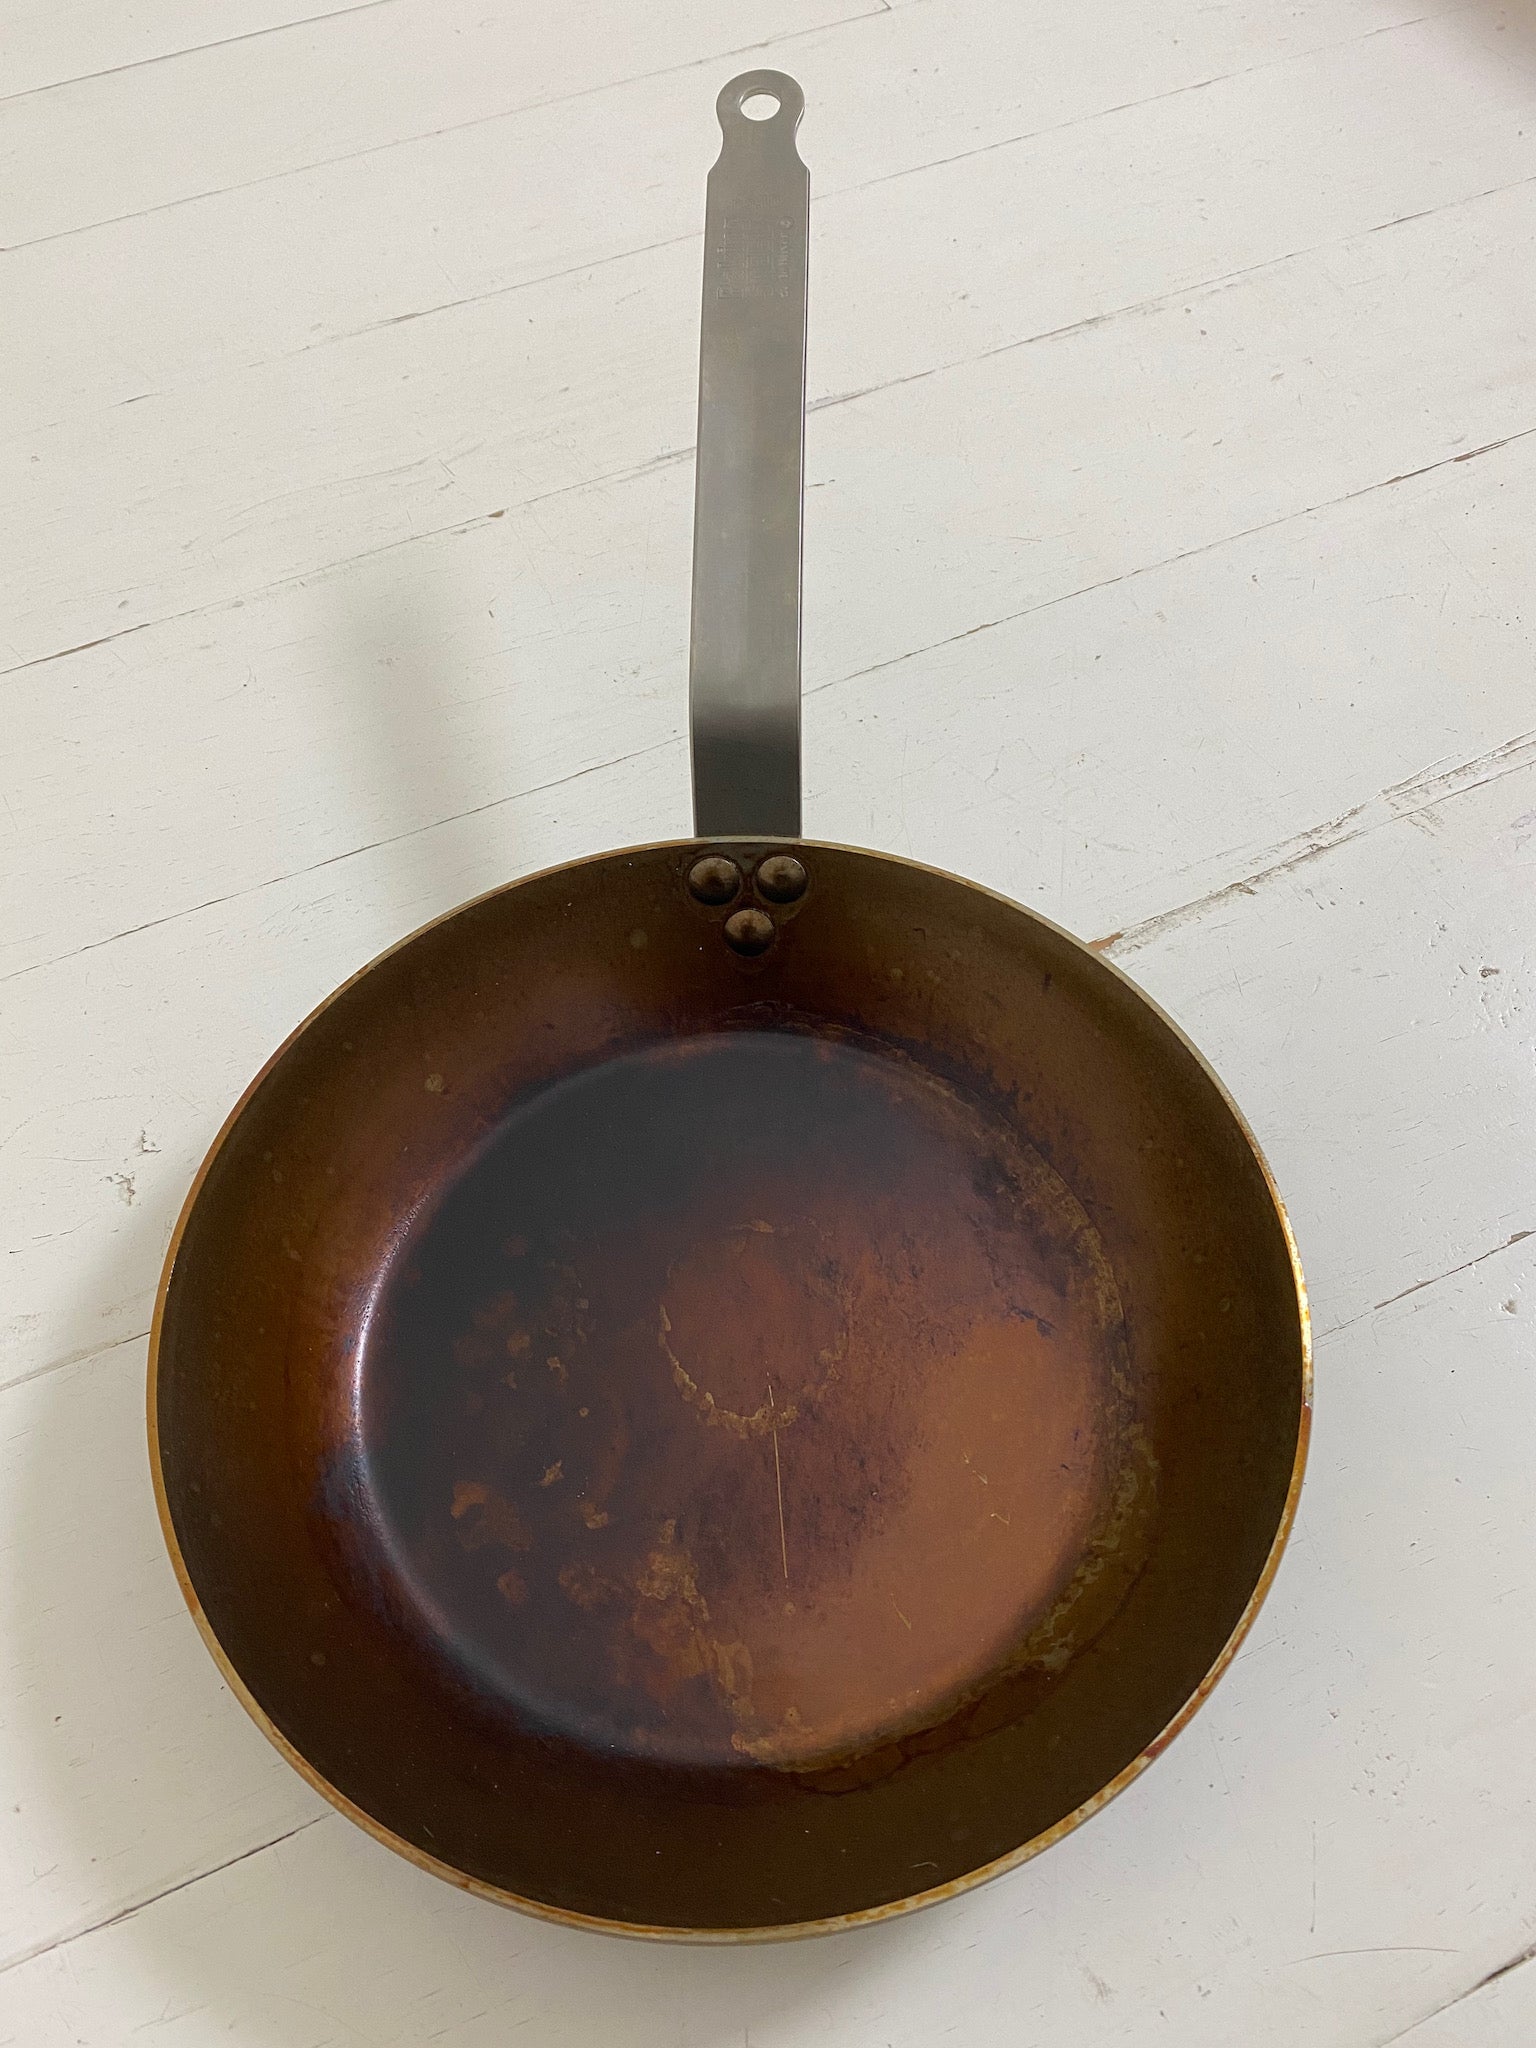 seasoning a pan